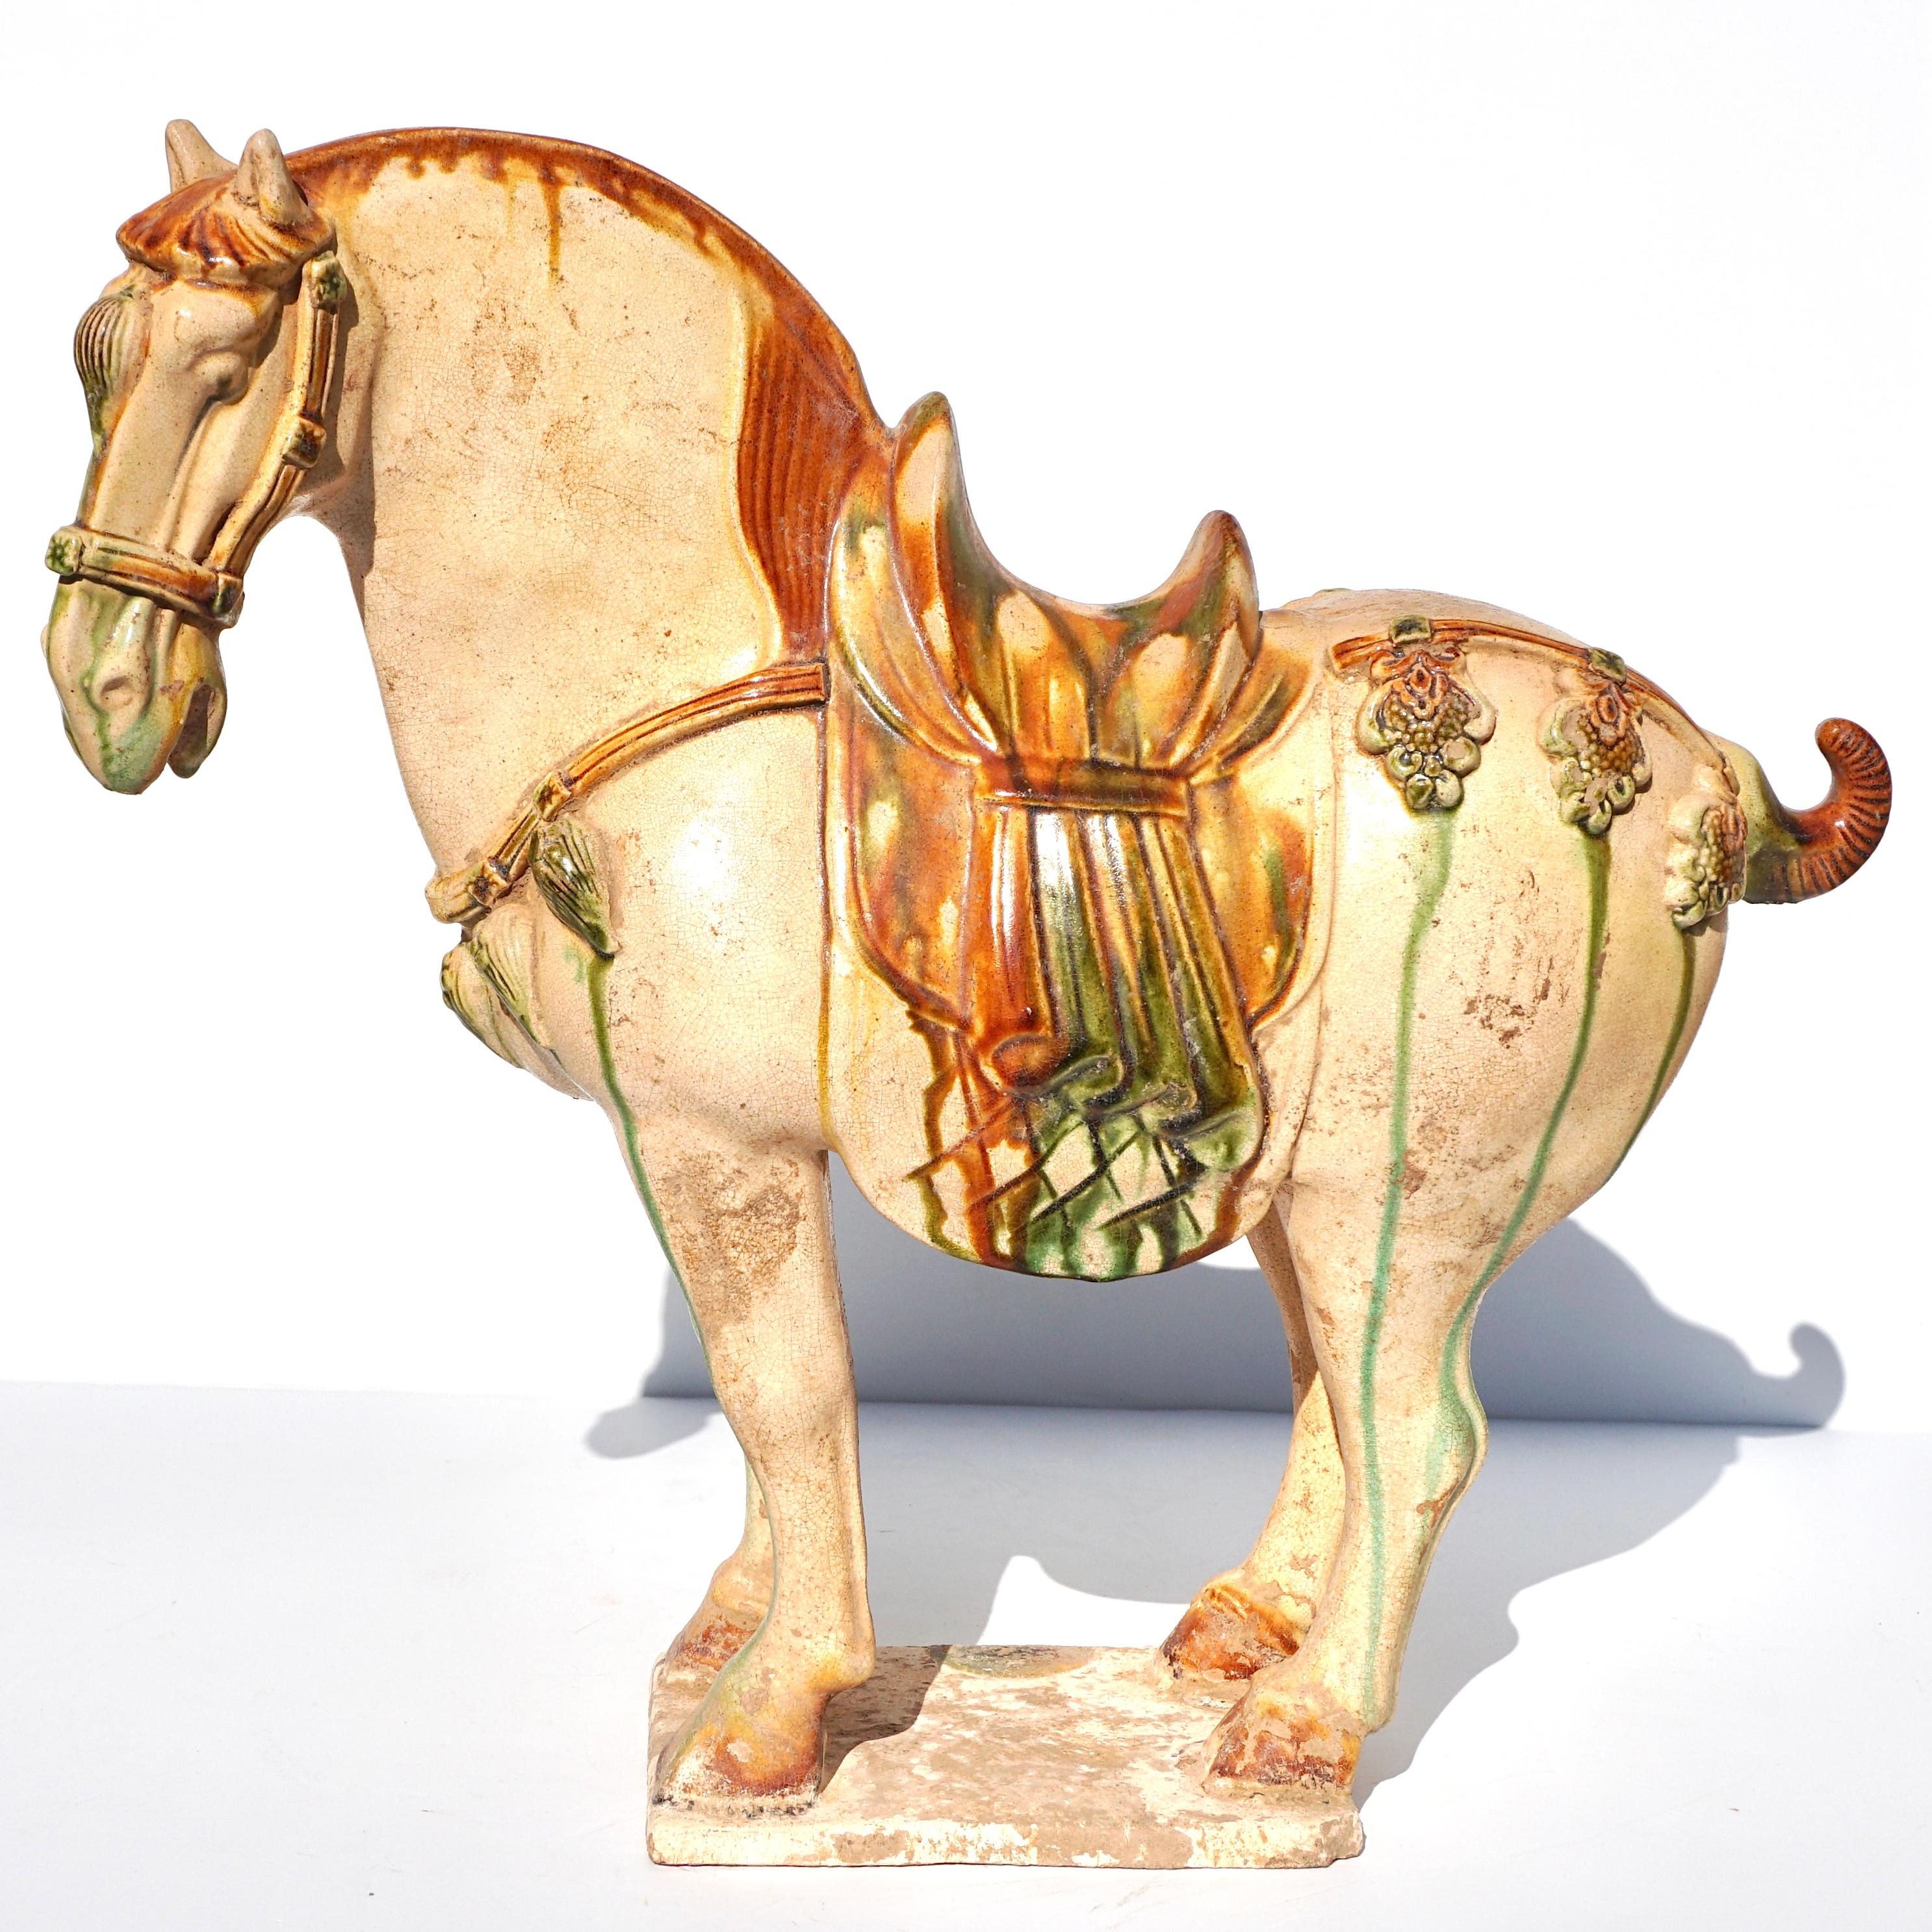 Caballo de cerámica vidriada de la dinastía Tang Dynasty (618 - 907) Sancai TL Tested

El caballo, de esmalte crema, está modelado de forma naturalista sobre una base rectangular, con la crin, la cola y las pezuñas resaltadas con esmalte ámbar. La